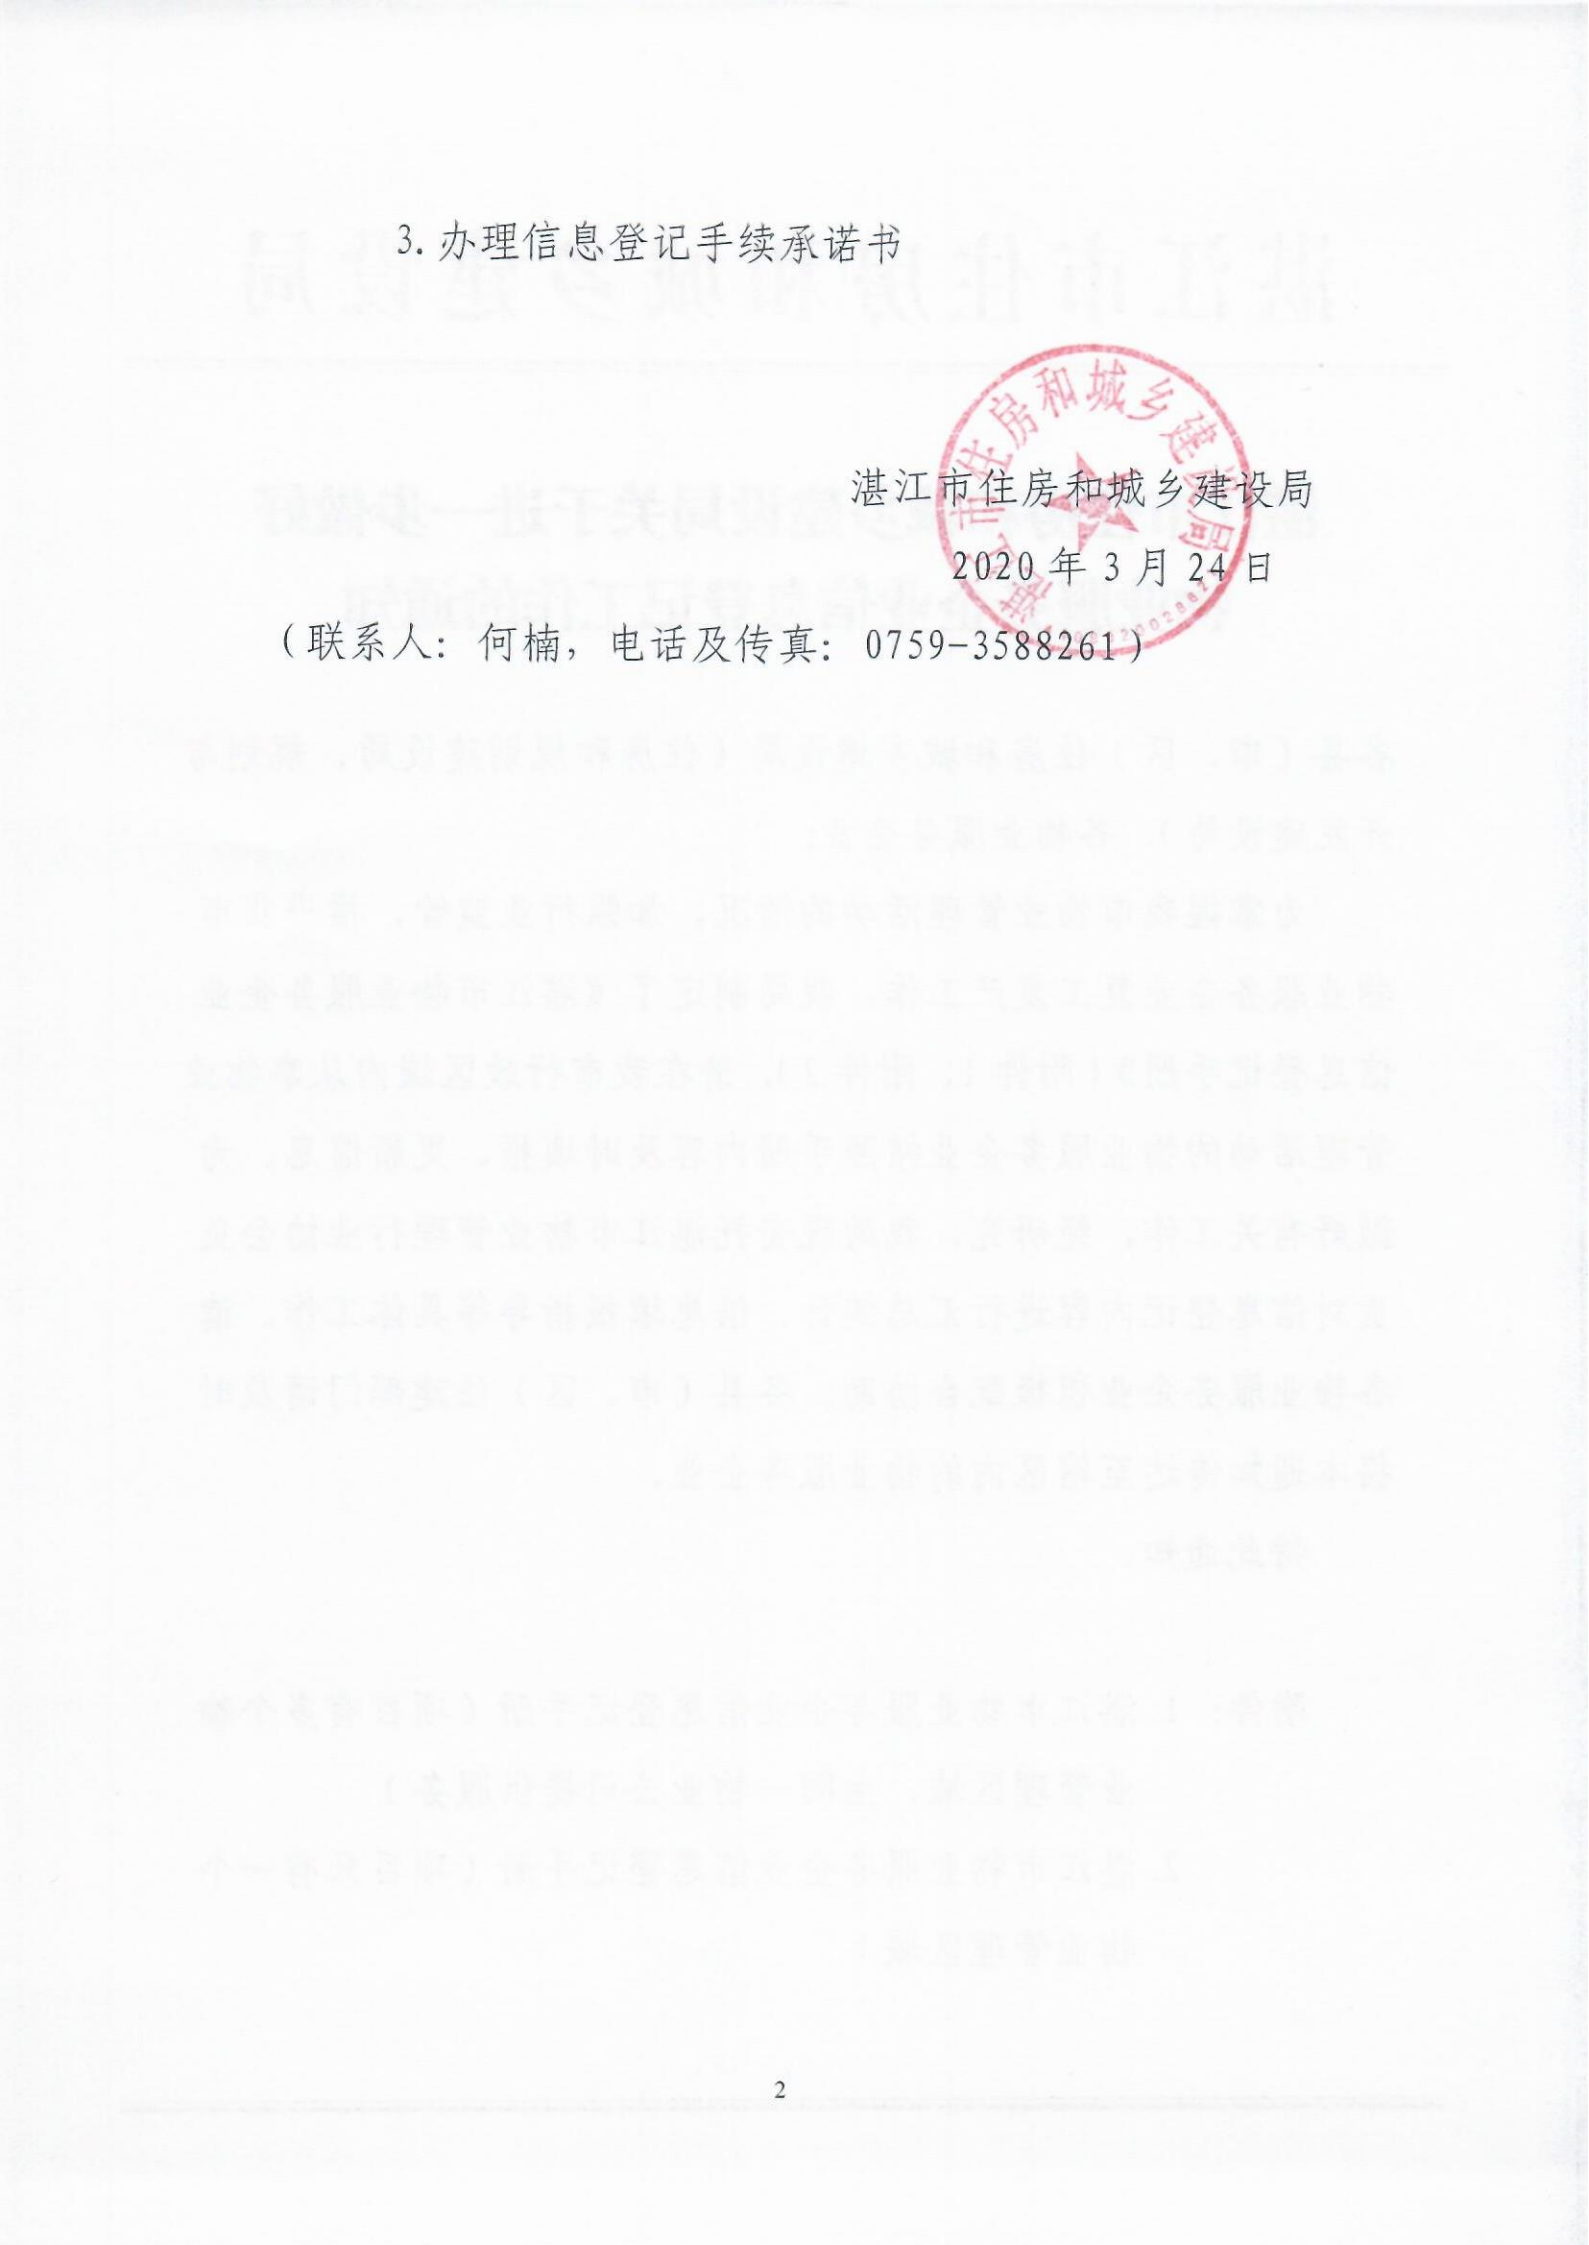 湛江市住建局关于进一步做好物业服务企业信息登记工作的通知